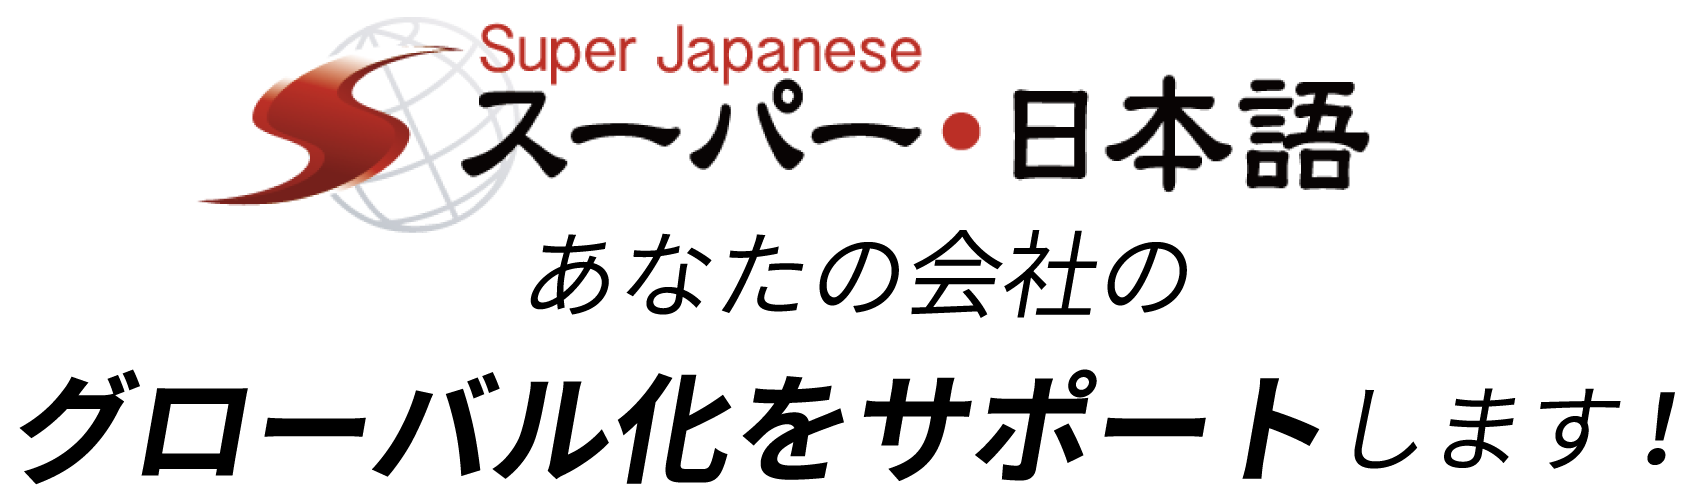 Super japanese スーパー・日本語 あなたの会社のグローバル化をサポートします!